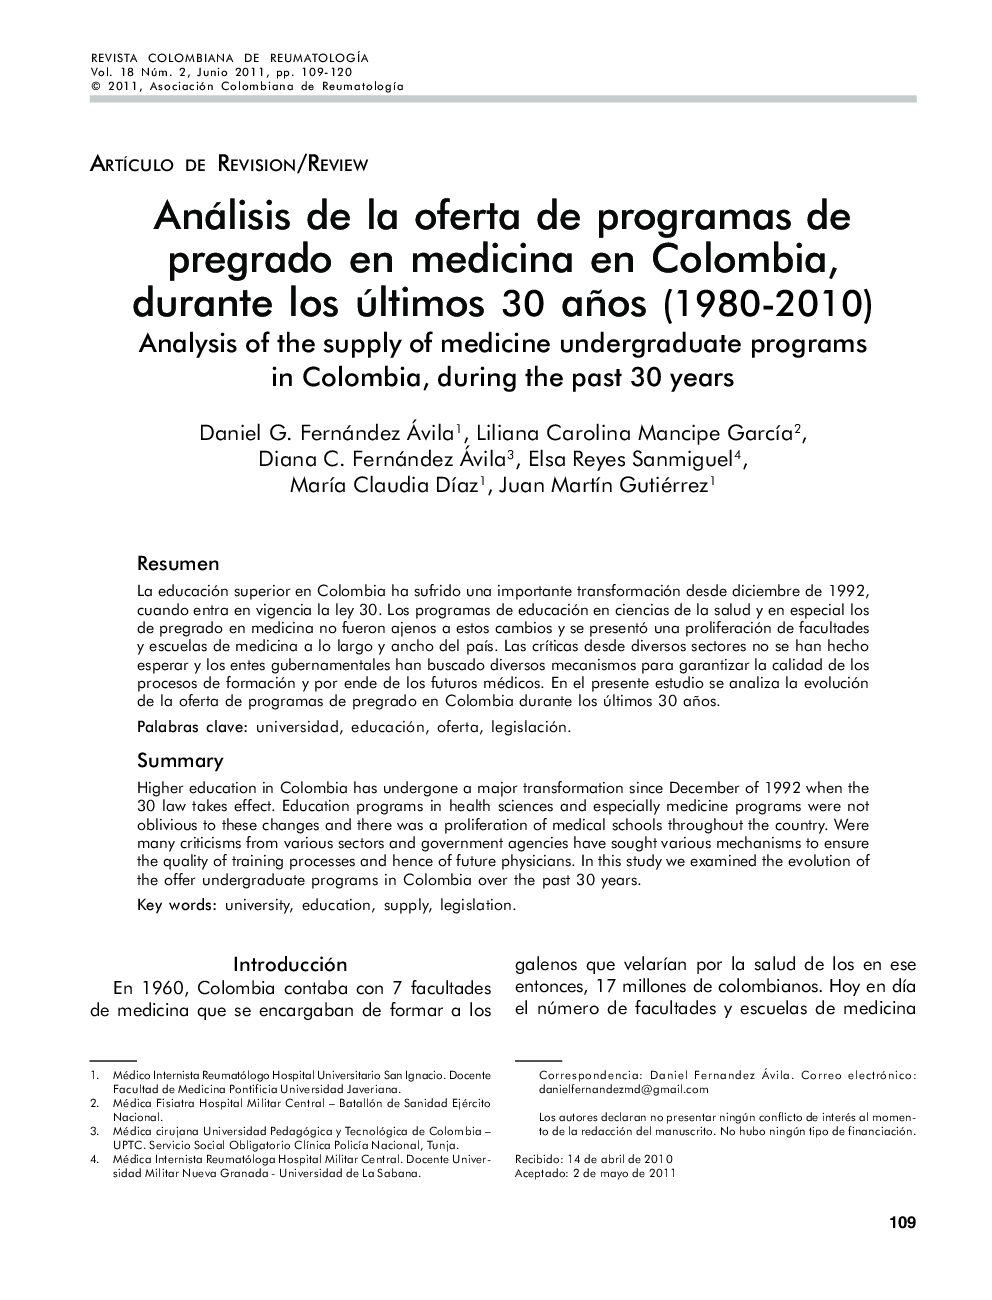 Análisis de la oferta de programas de pregrado en medicina en Colombia, durante los últimos 30 años (1980-2010)